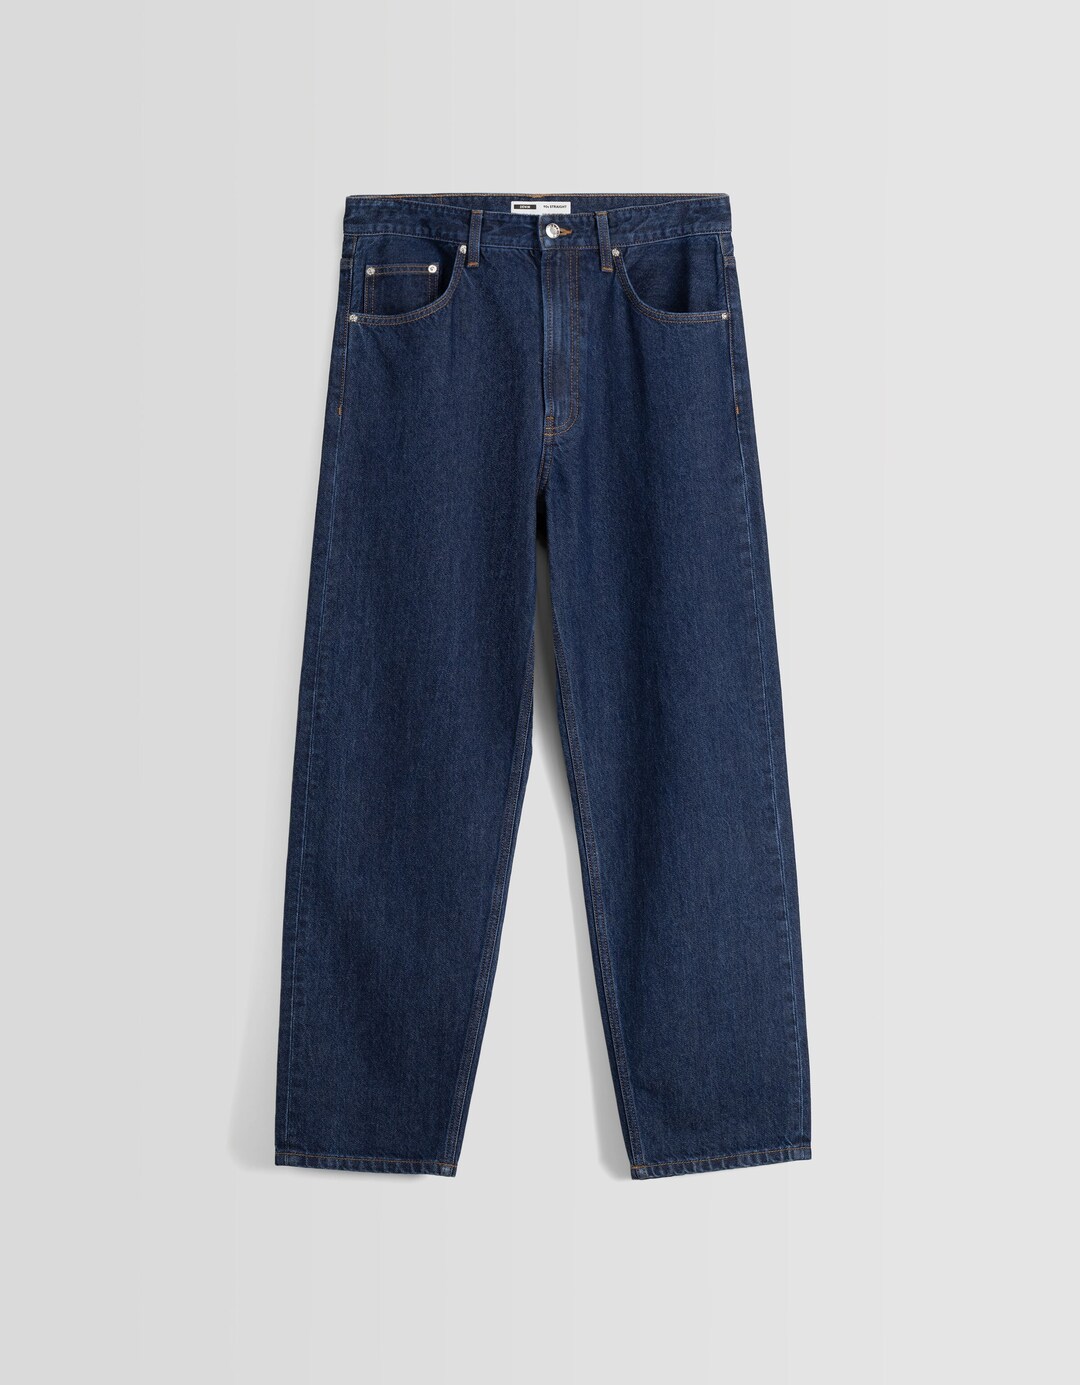 90's jeans in recht model